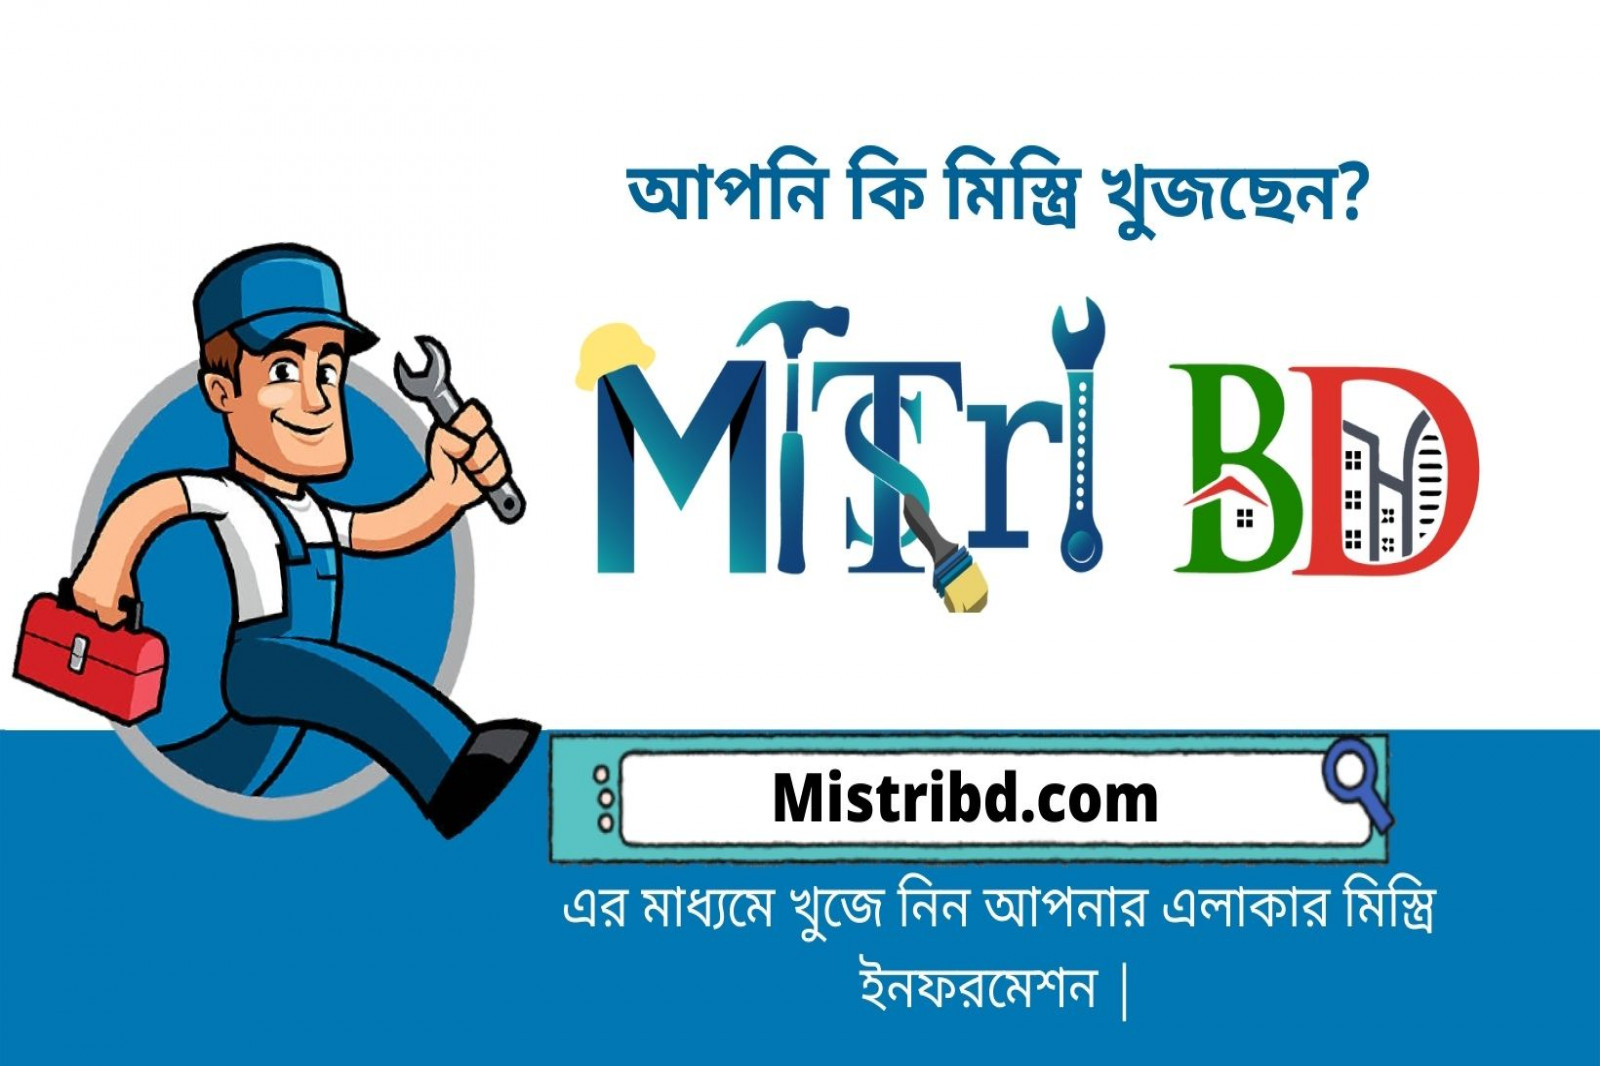 mistribd.com